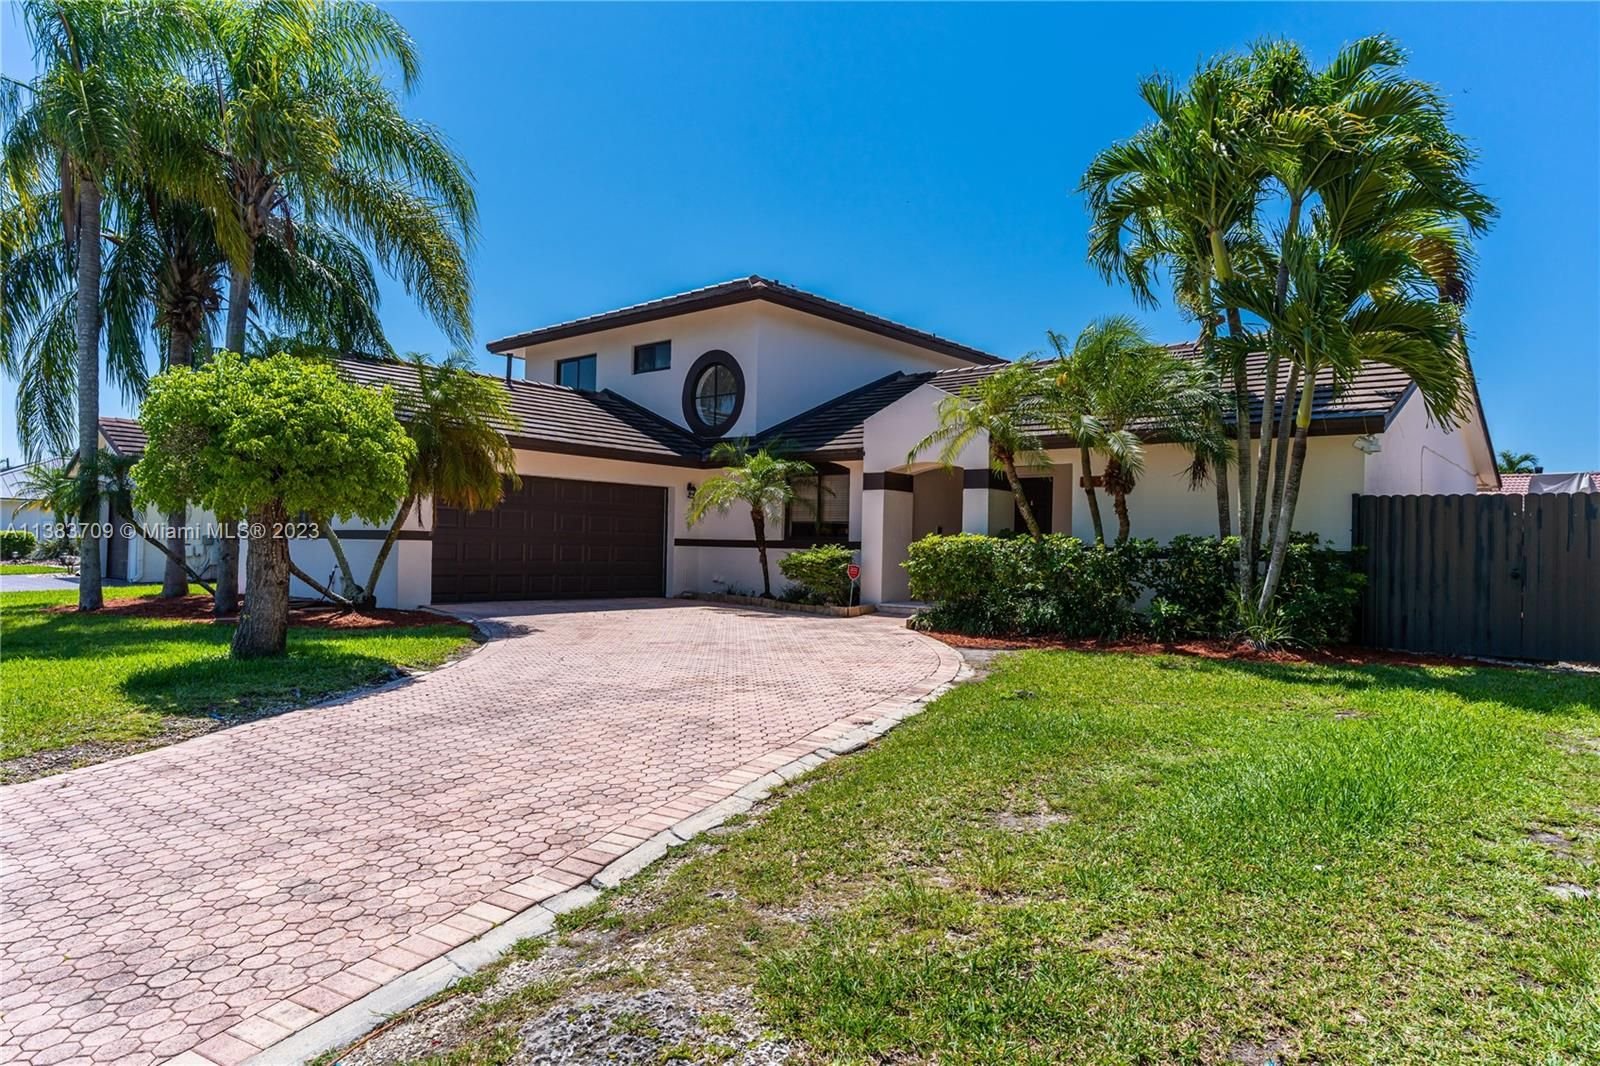 Real estate property located at 14832 169th Ln, Miami-Dade County, G B ESTATES, Miami, FL